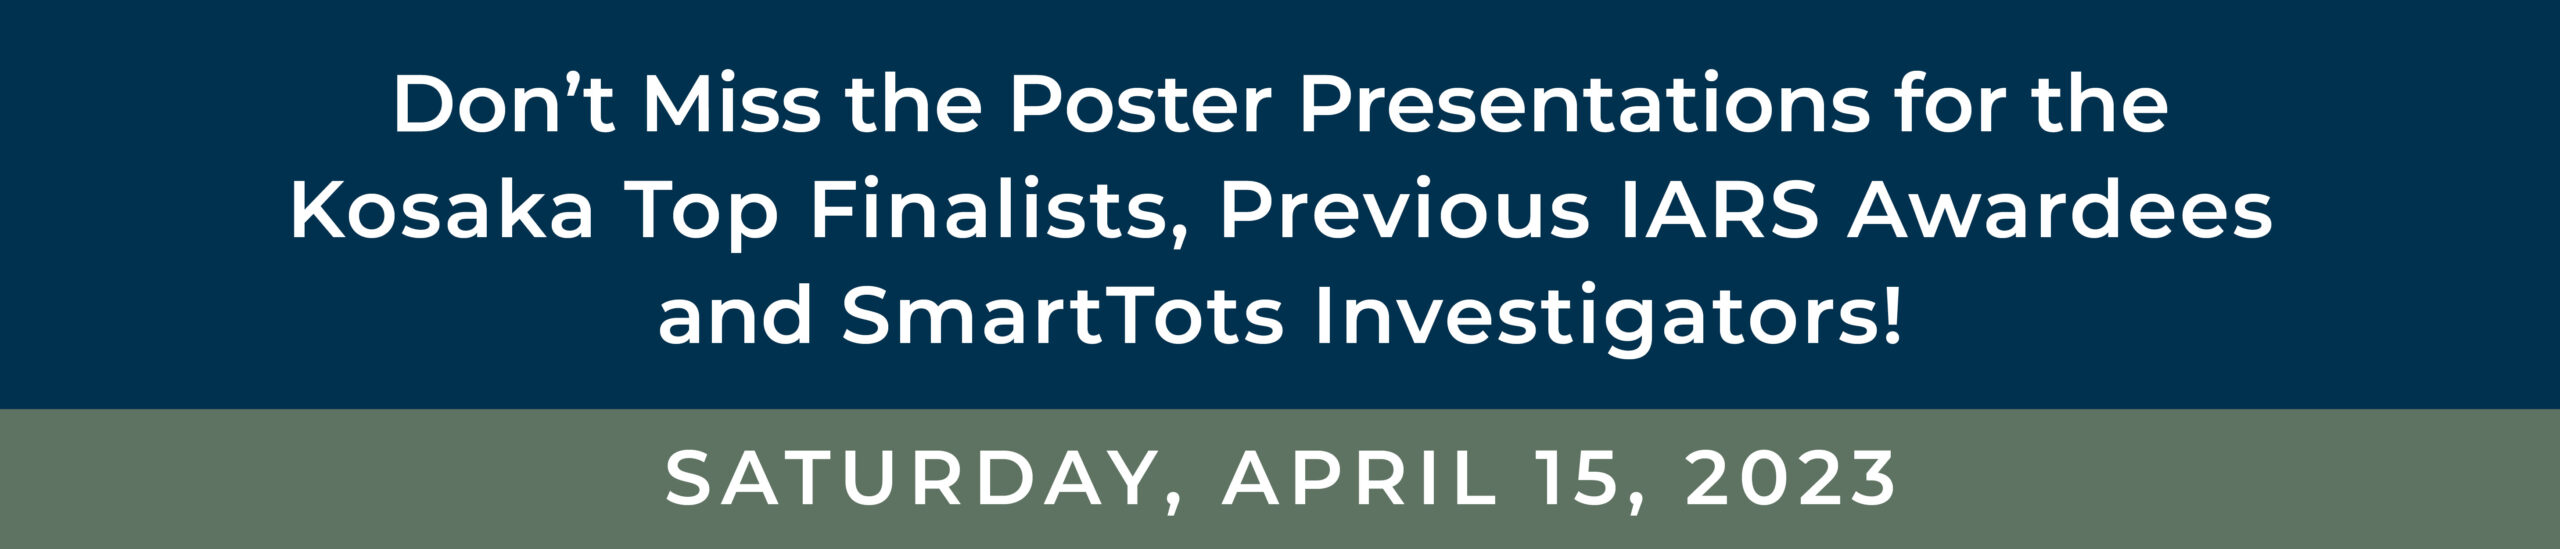 April 15, 2023 Poster Session Header Image